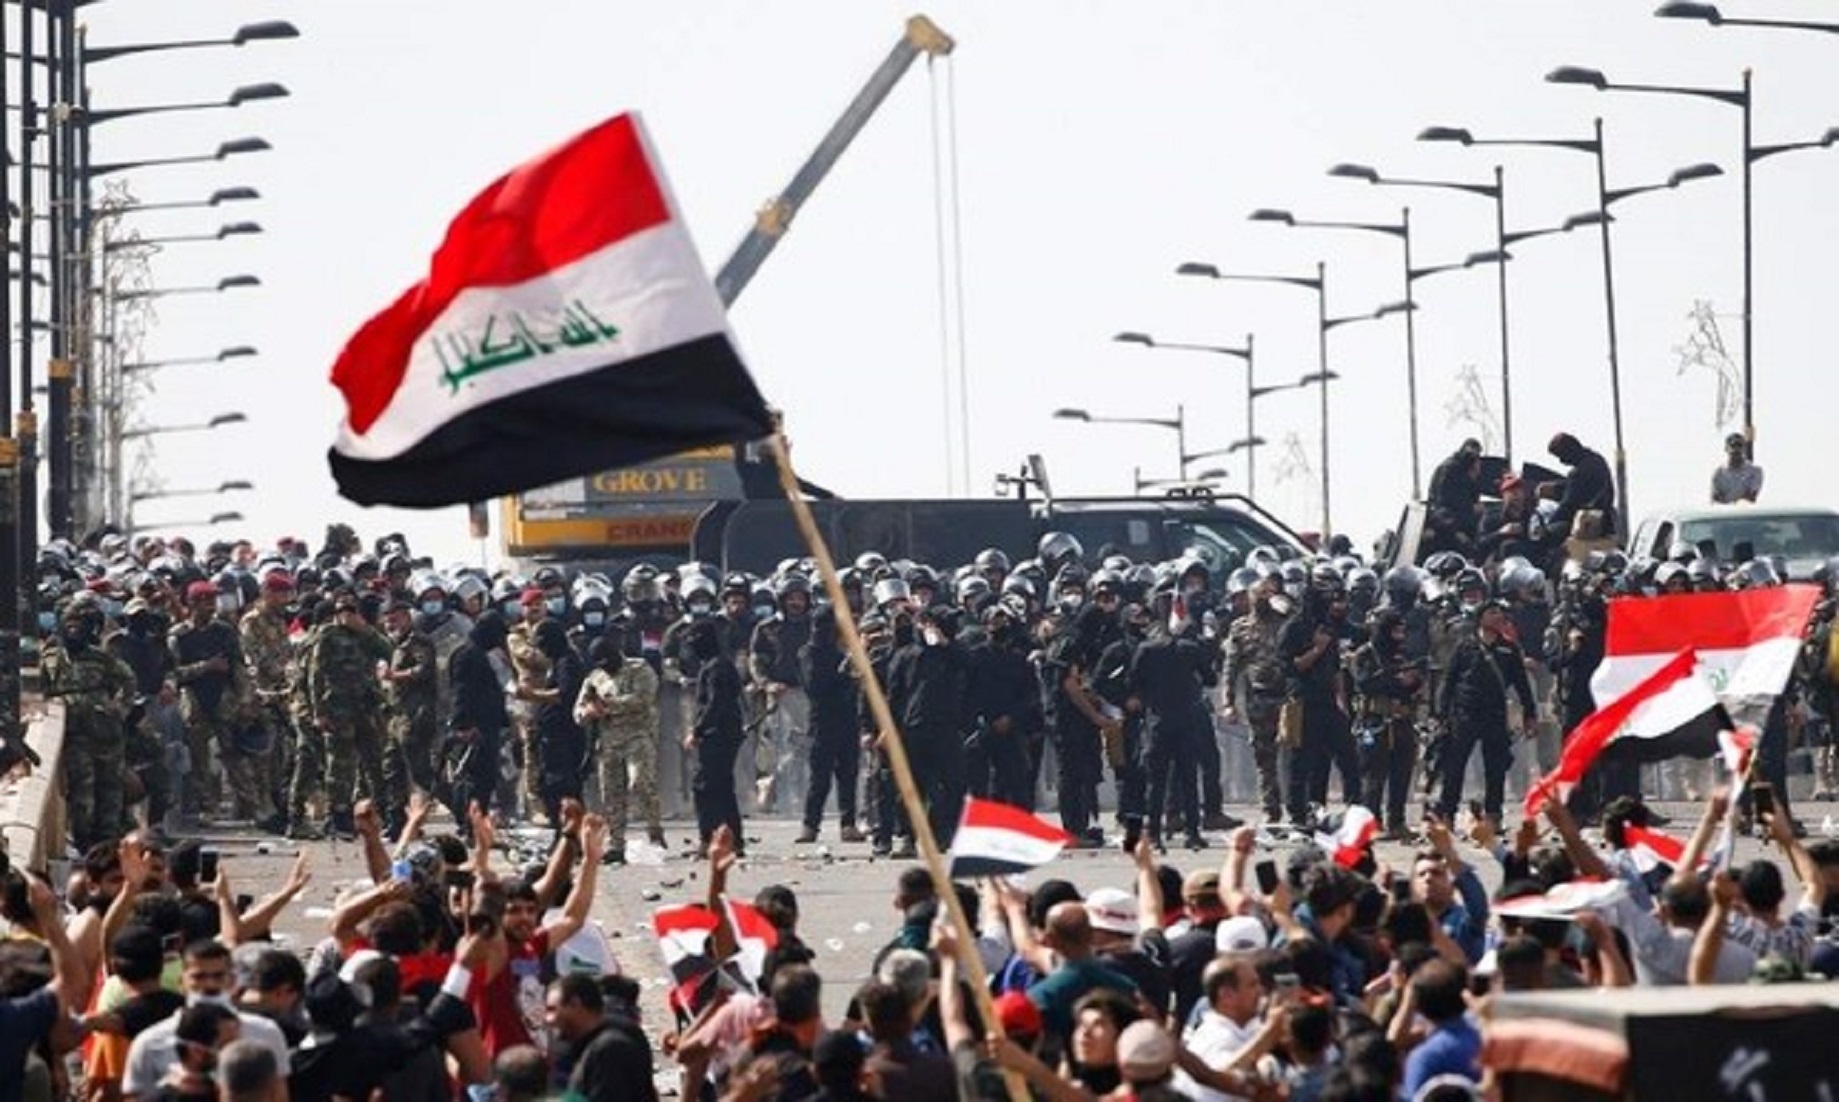 UN chief condemns live fire at Iraqi protesters as ‘disturbing’